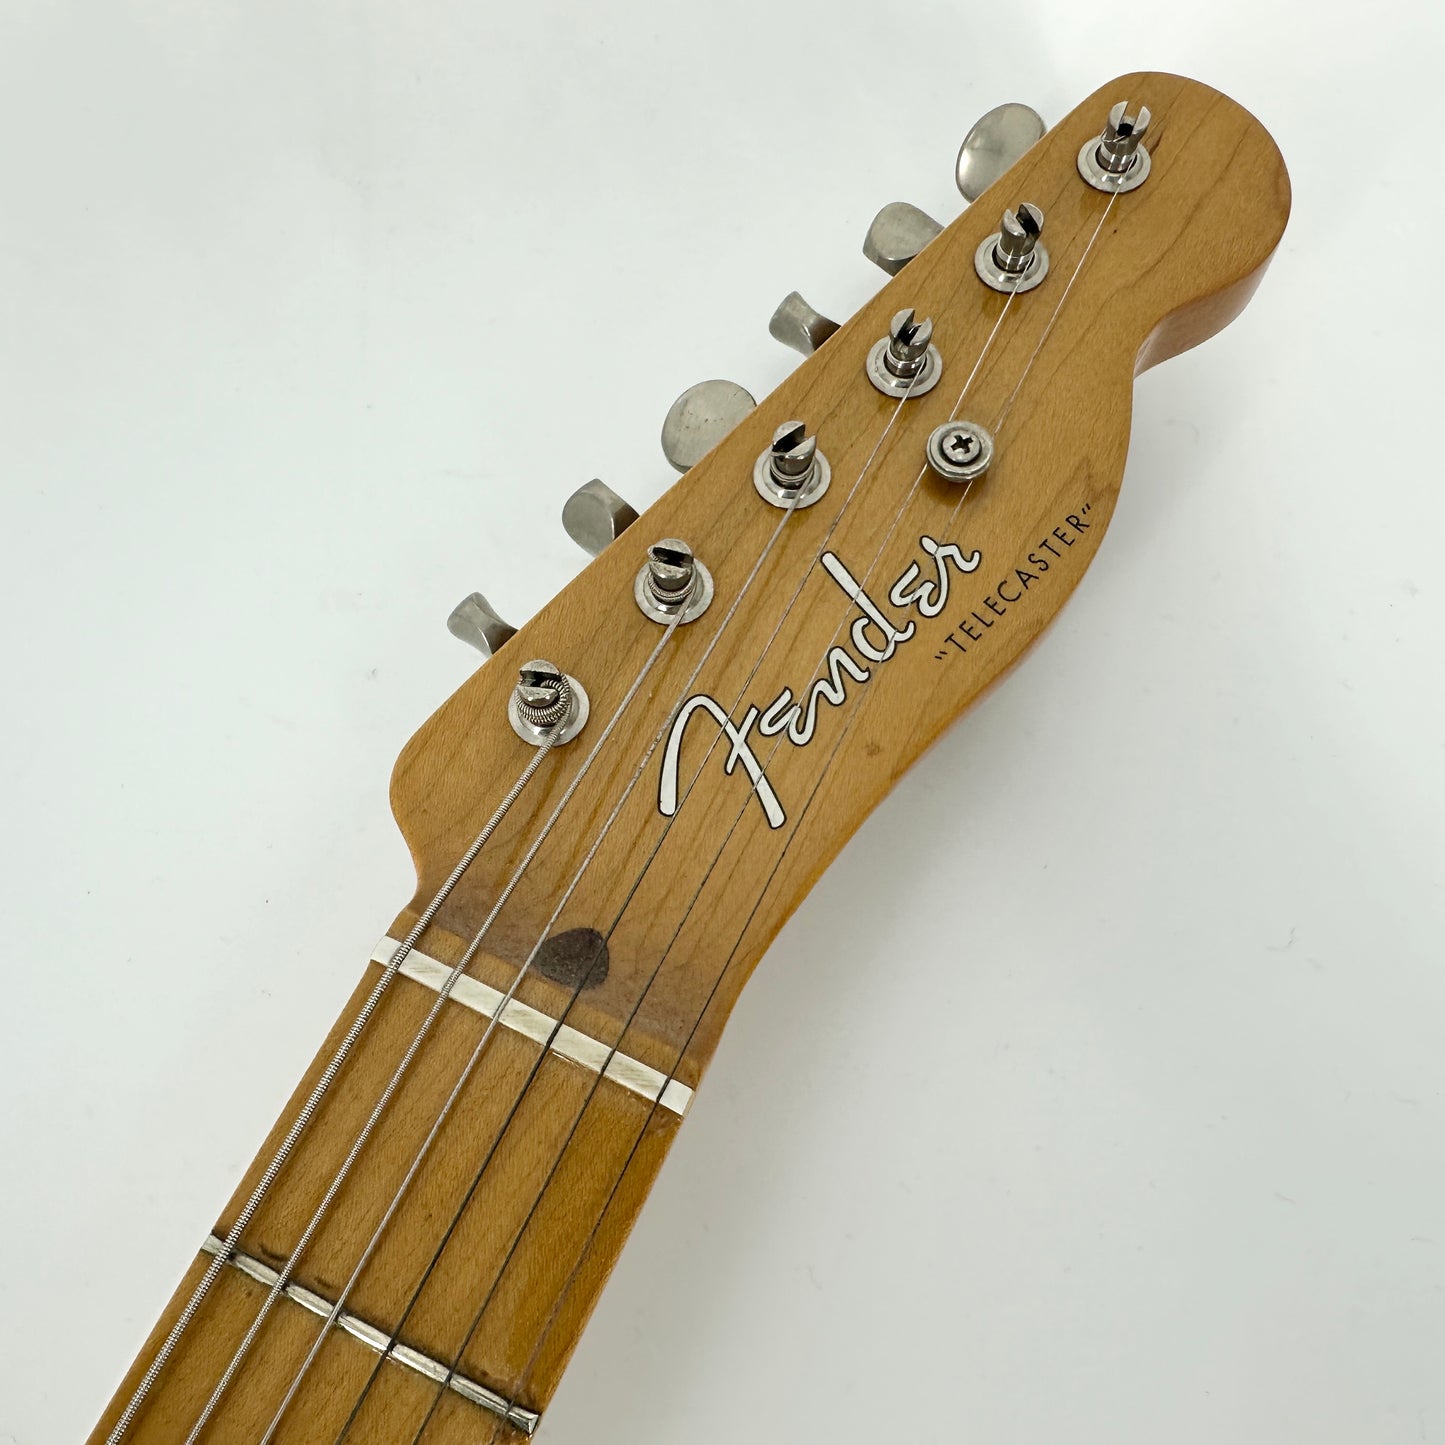 2014 Fender Classic 50s Telecaster - White Blonde